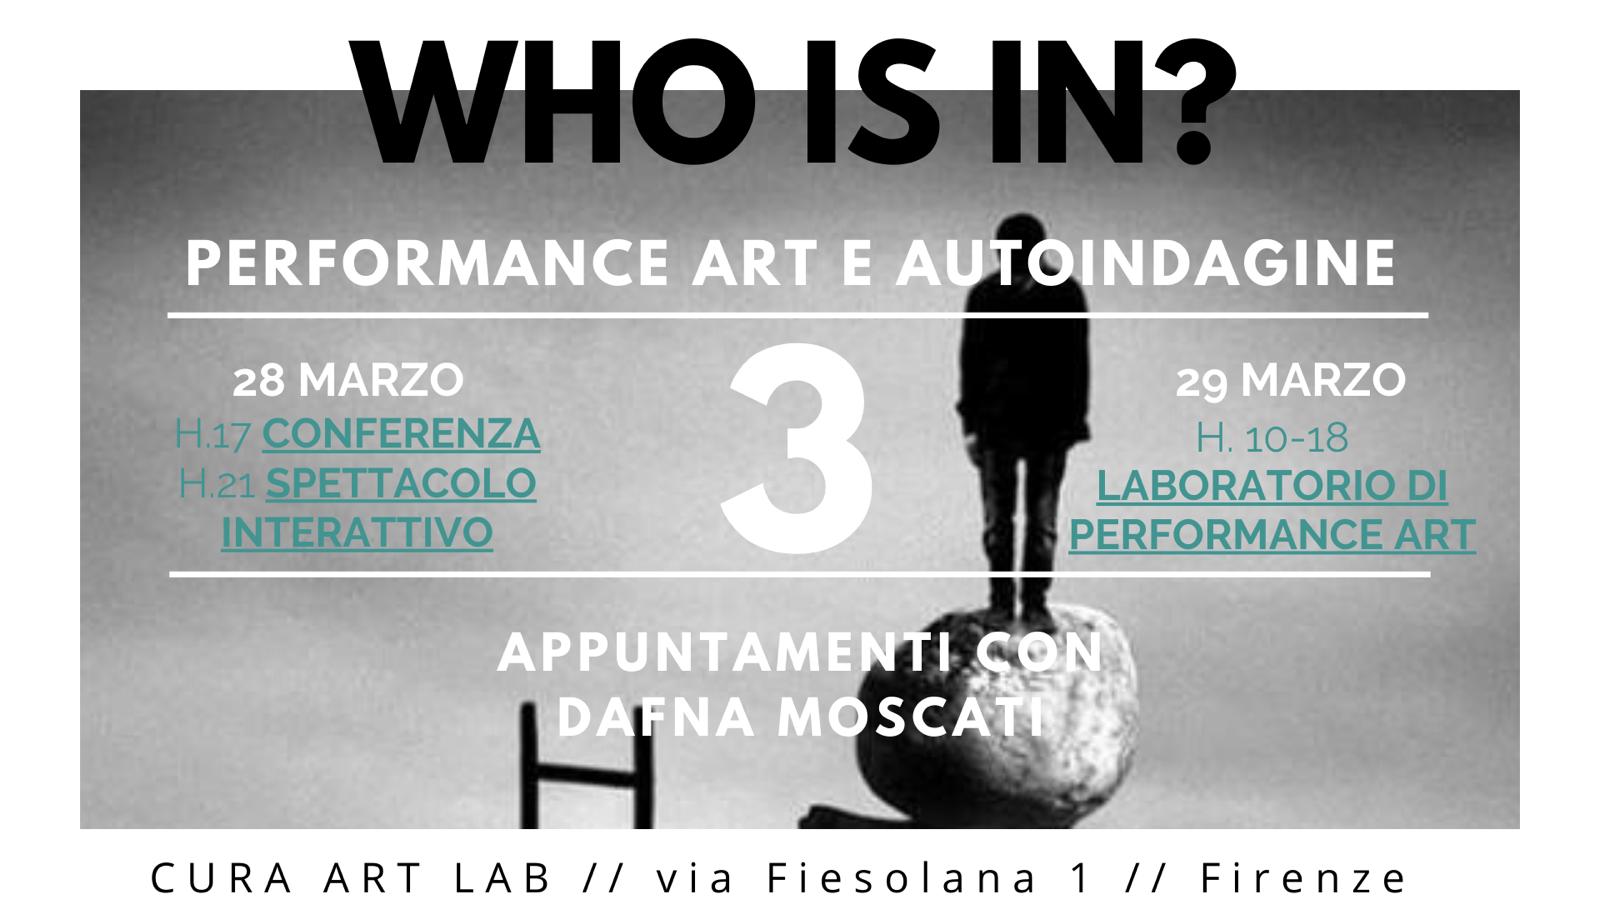 WHO IS IN? Performance e Autoindagine: CONFERENZA - SPETTACOLO INTERATTIVO - LABORATORIO